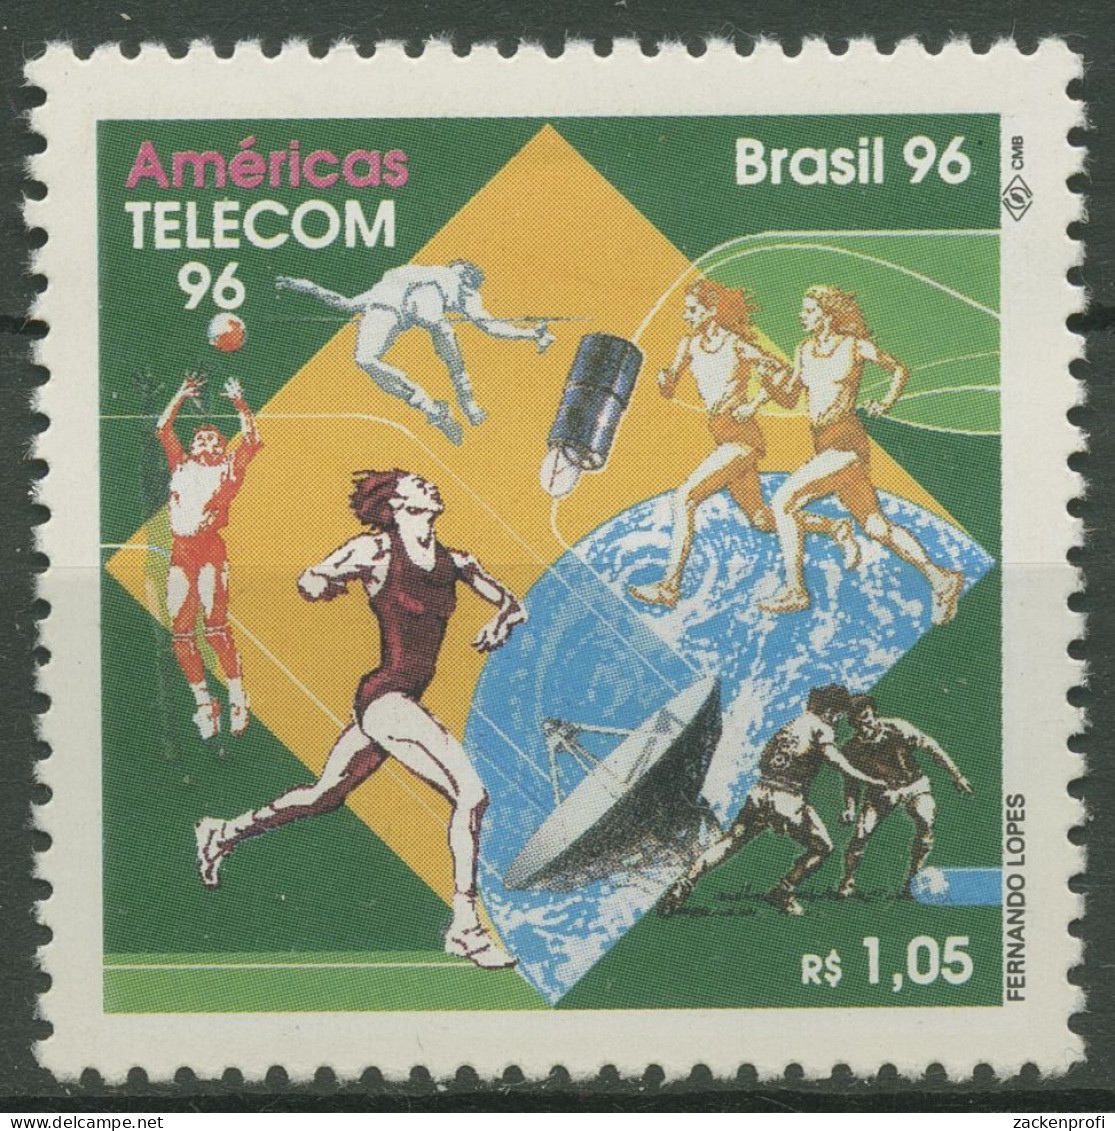 Brasilien 1996 Fernmeldetechnik AMERICAS TELEKOM Satellit 2708 Postfrisch - Neufs